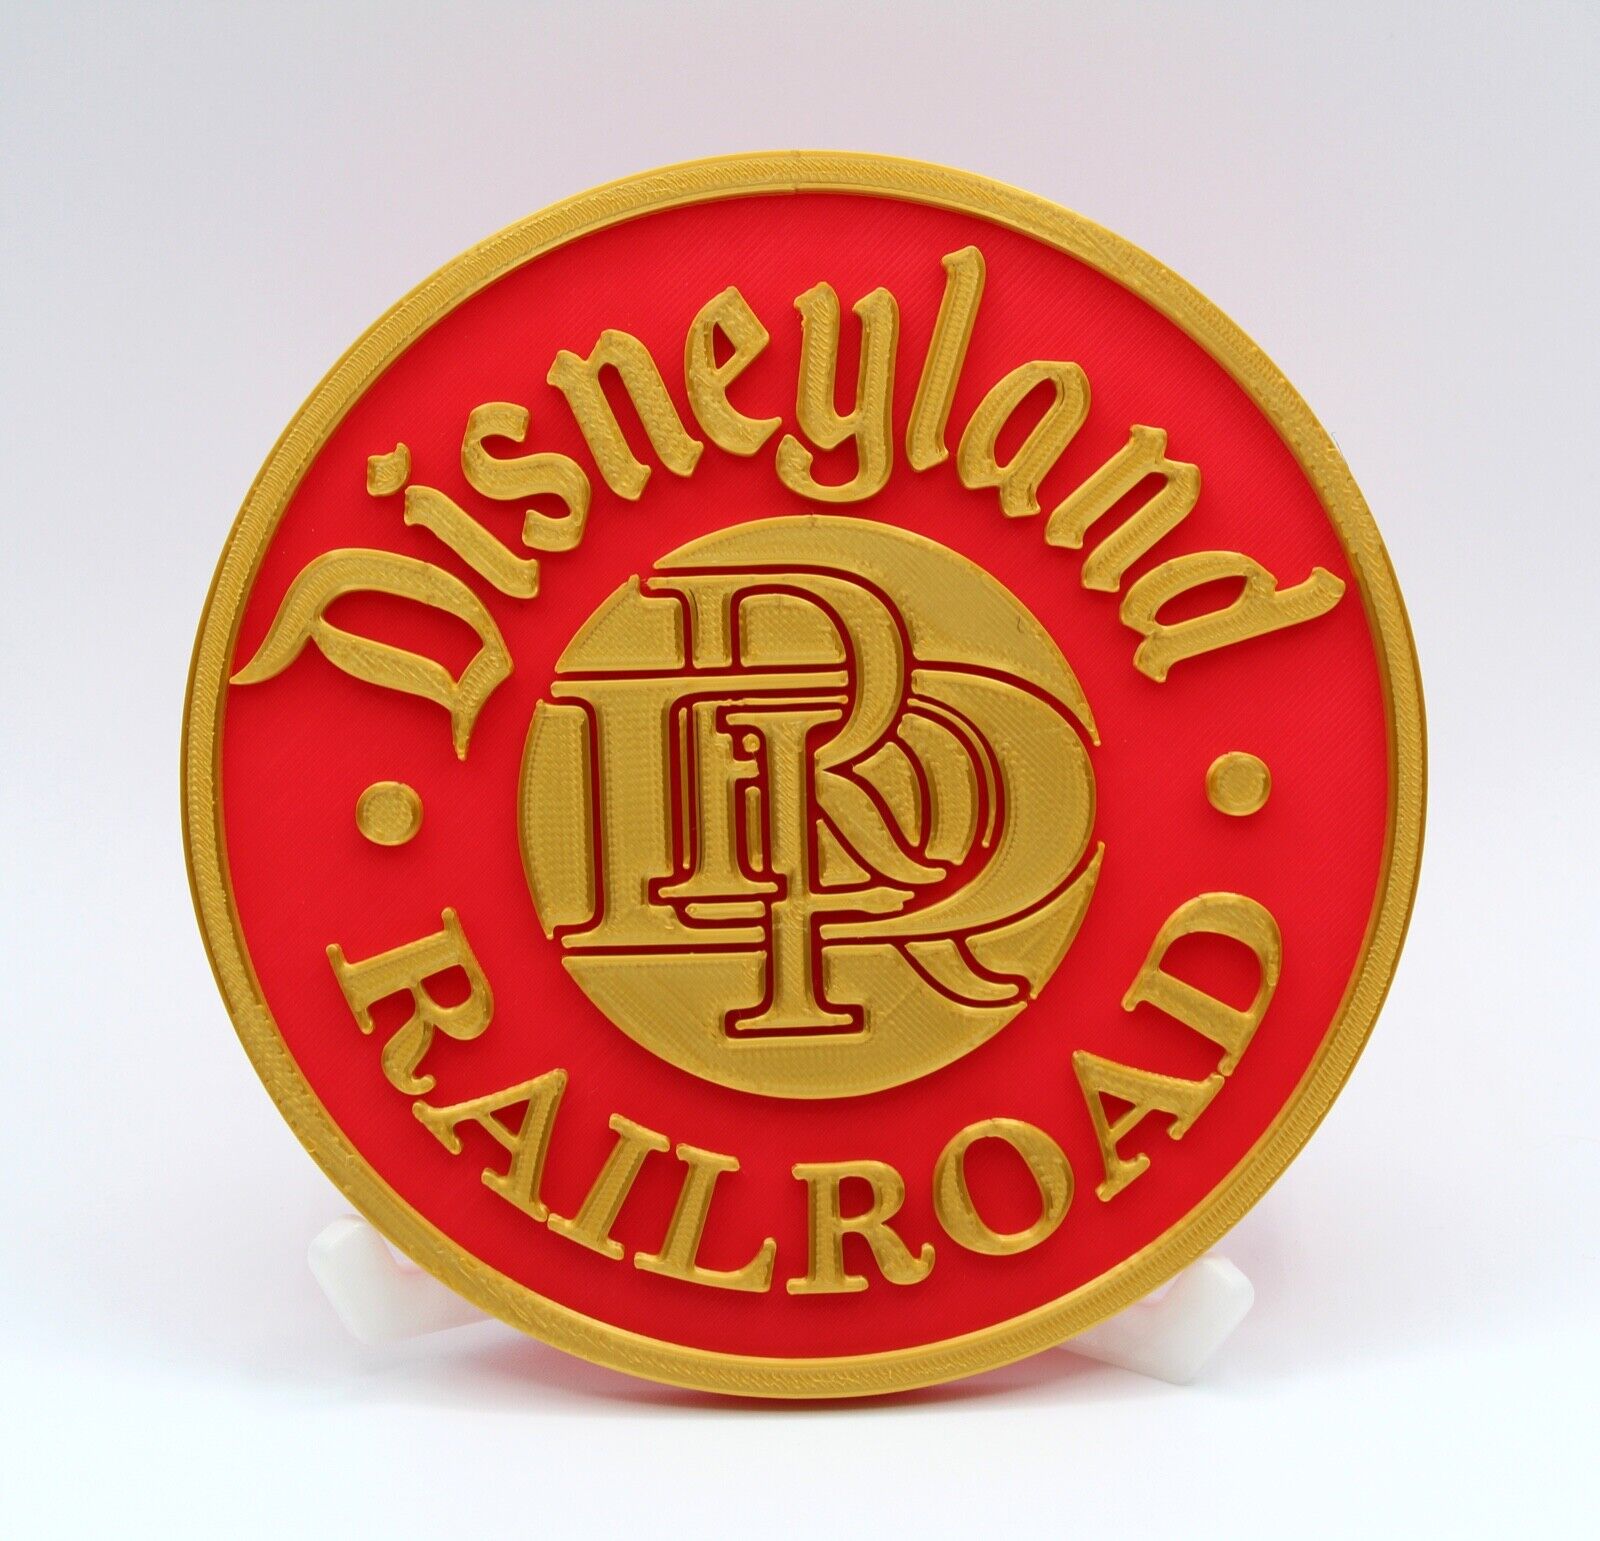 Disneyland Railroad 3d Printed Plaque Sign Prop Reproduction Train Drr Dlrr 10"